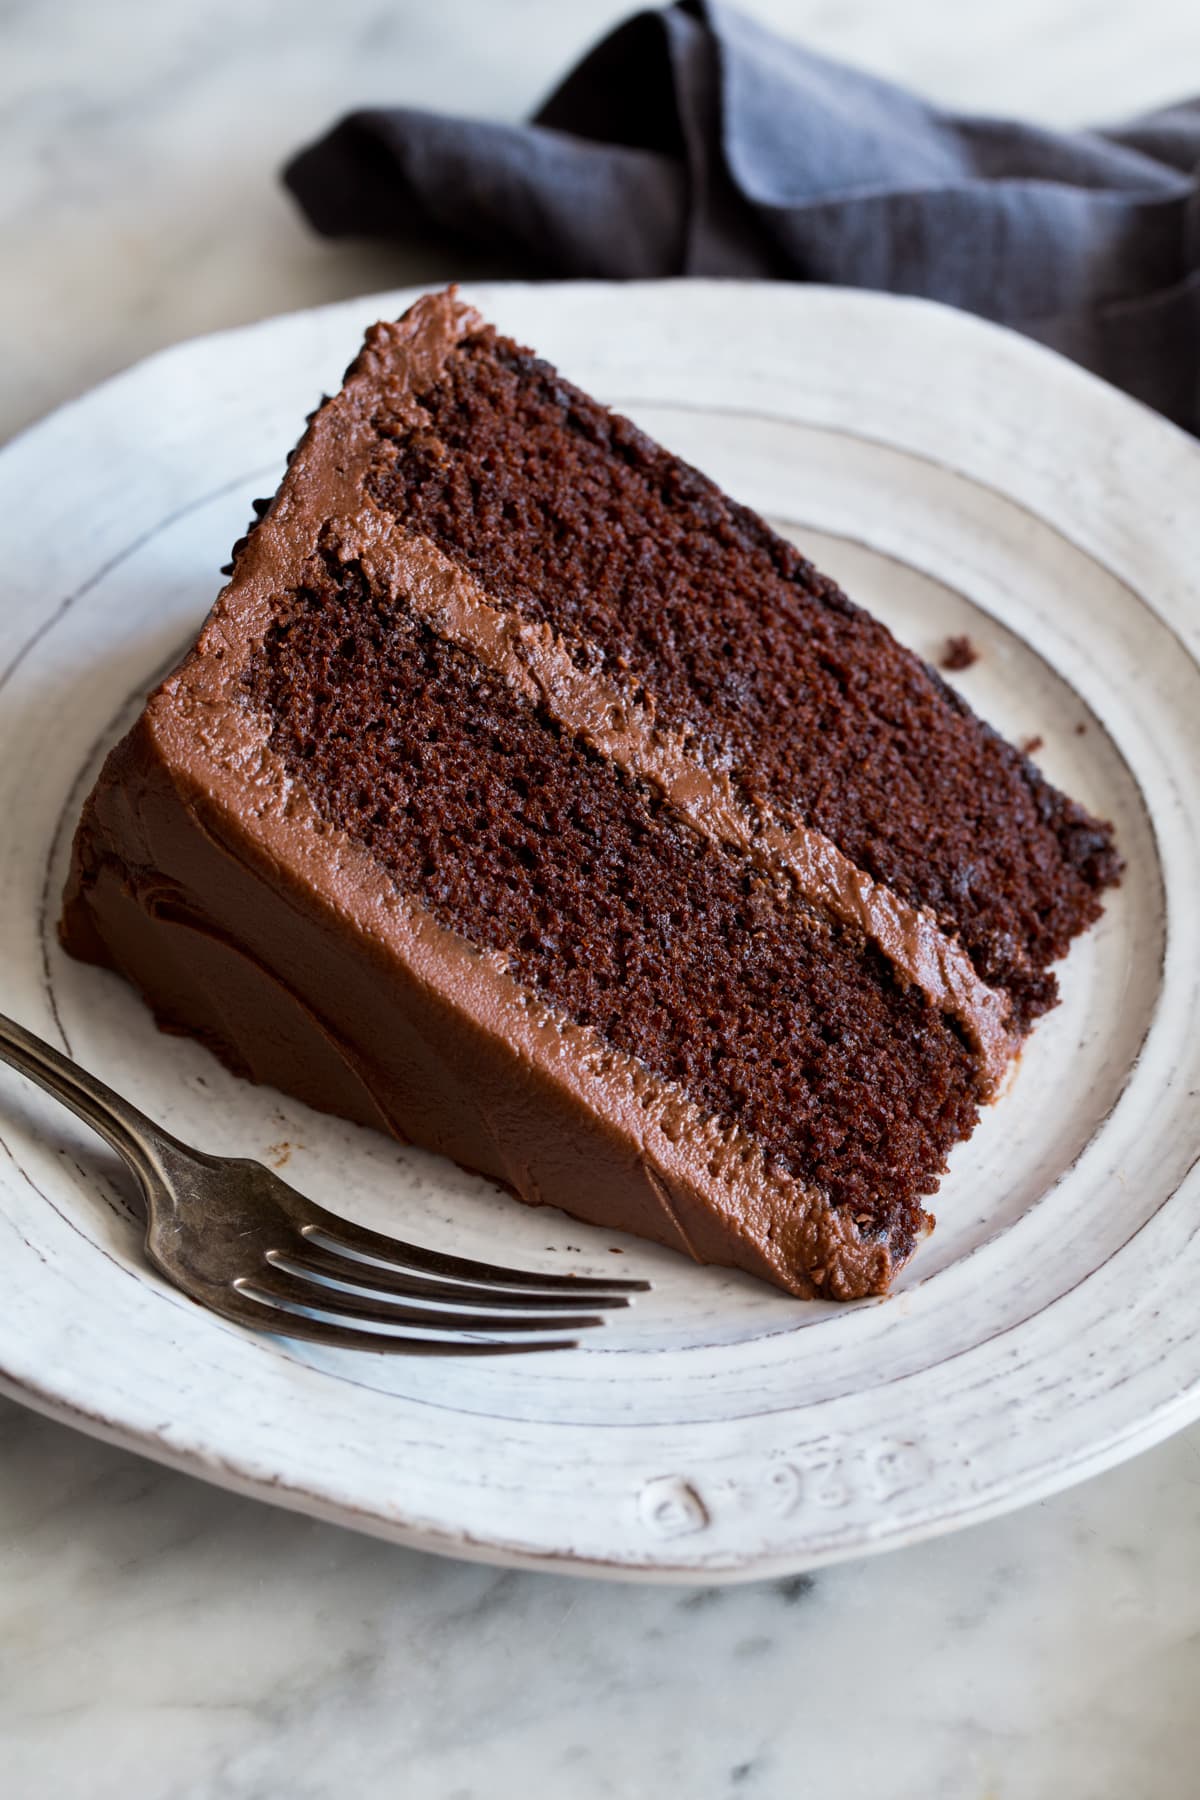 Beattys Chocolate Cake Recipe  Ina Garten  Food Network